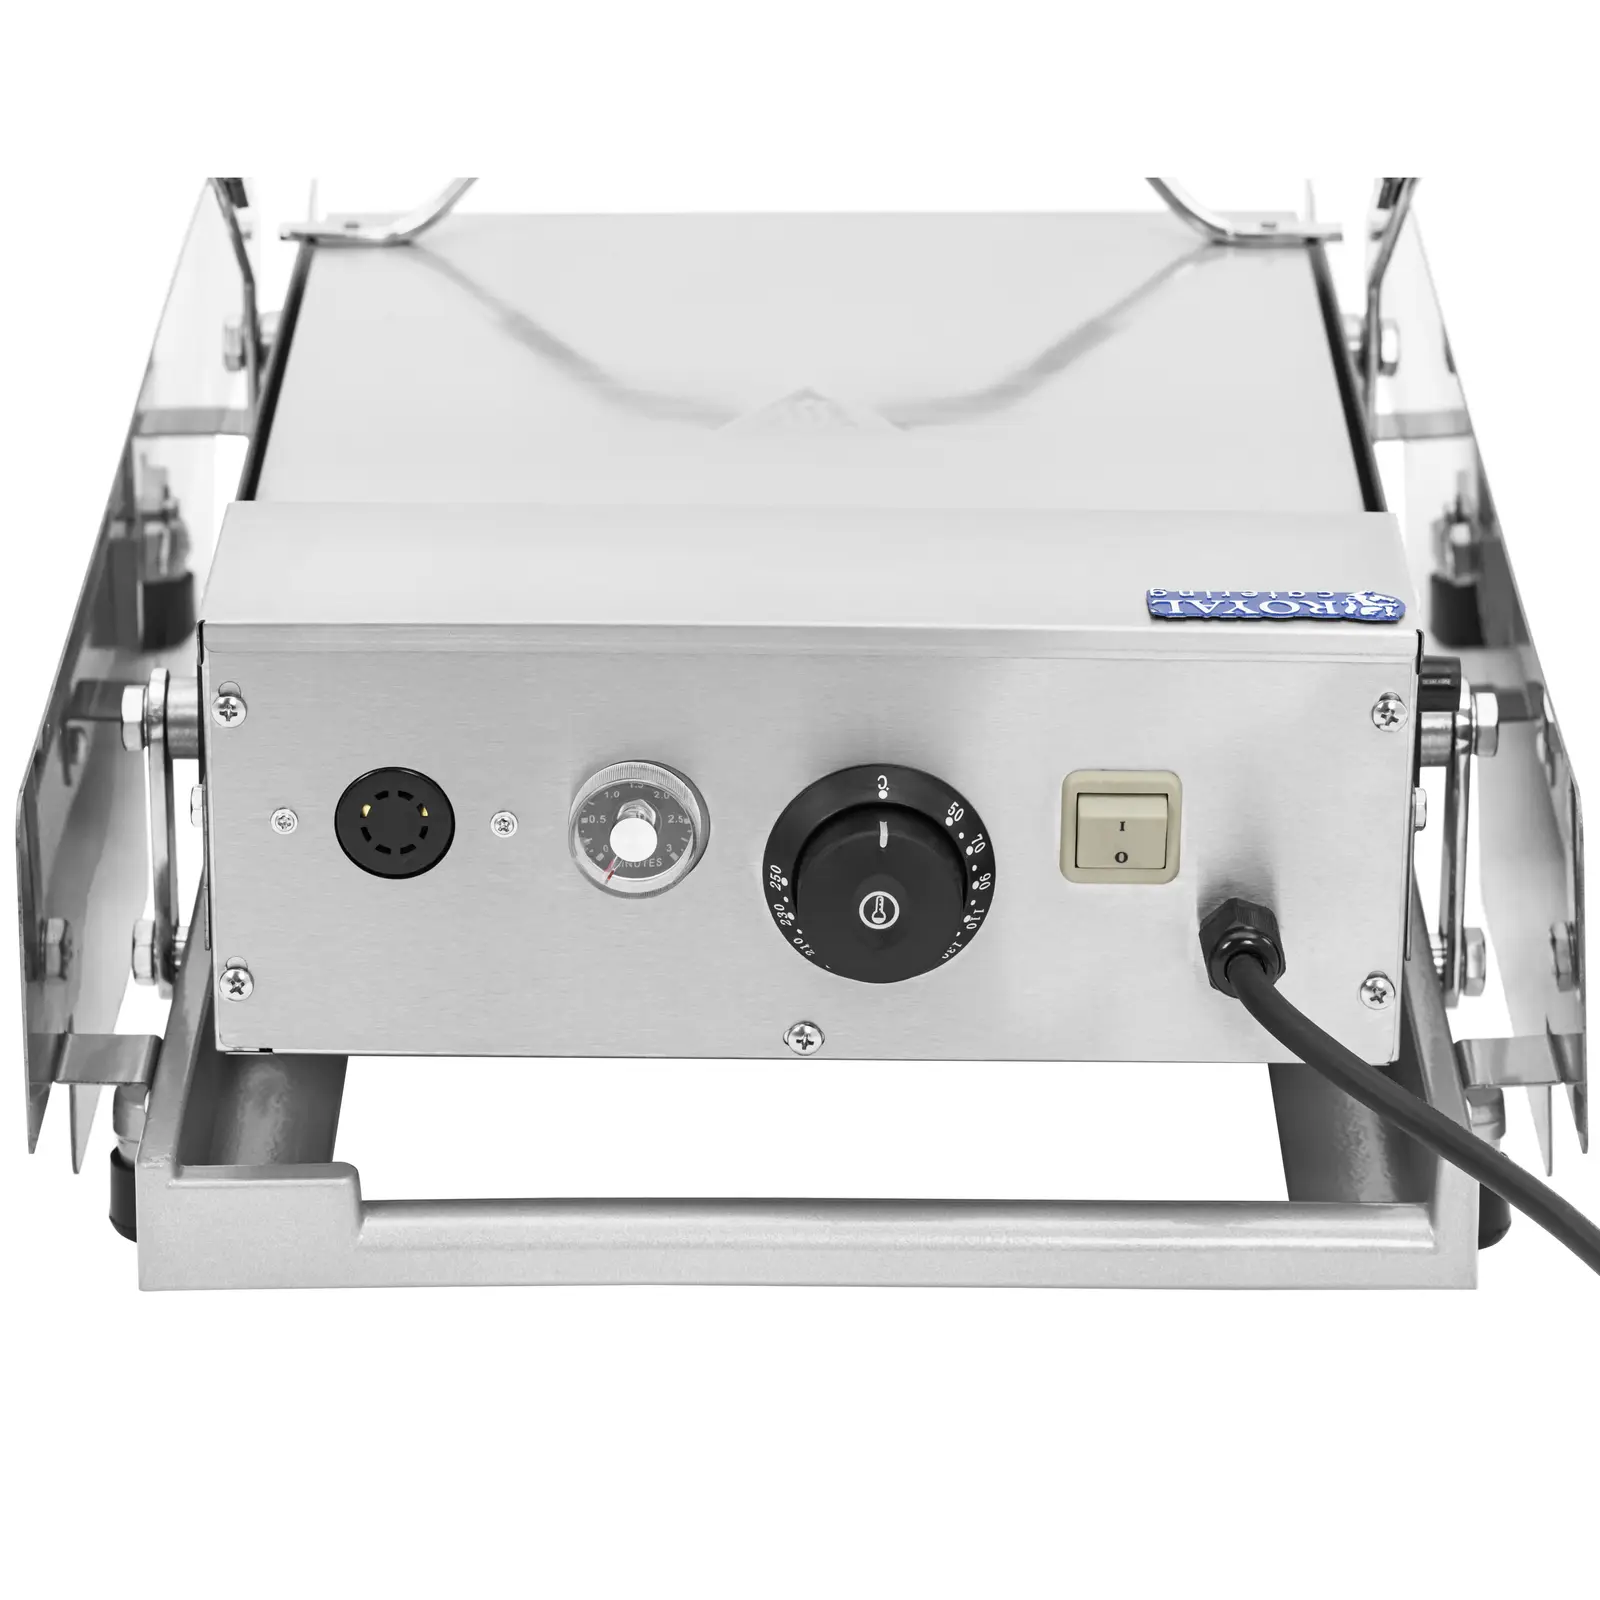 Hamburger toaster - időzítő riasztóval - 320 x 440 mm - 0-250 °C - Royal Catering